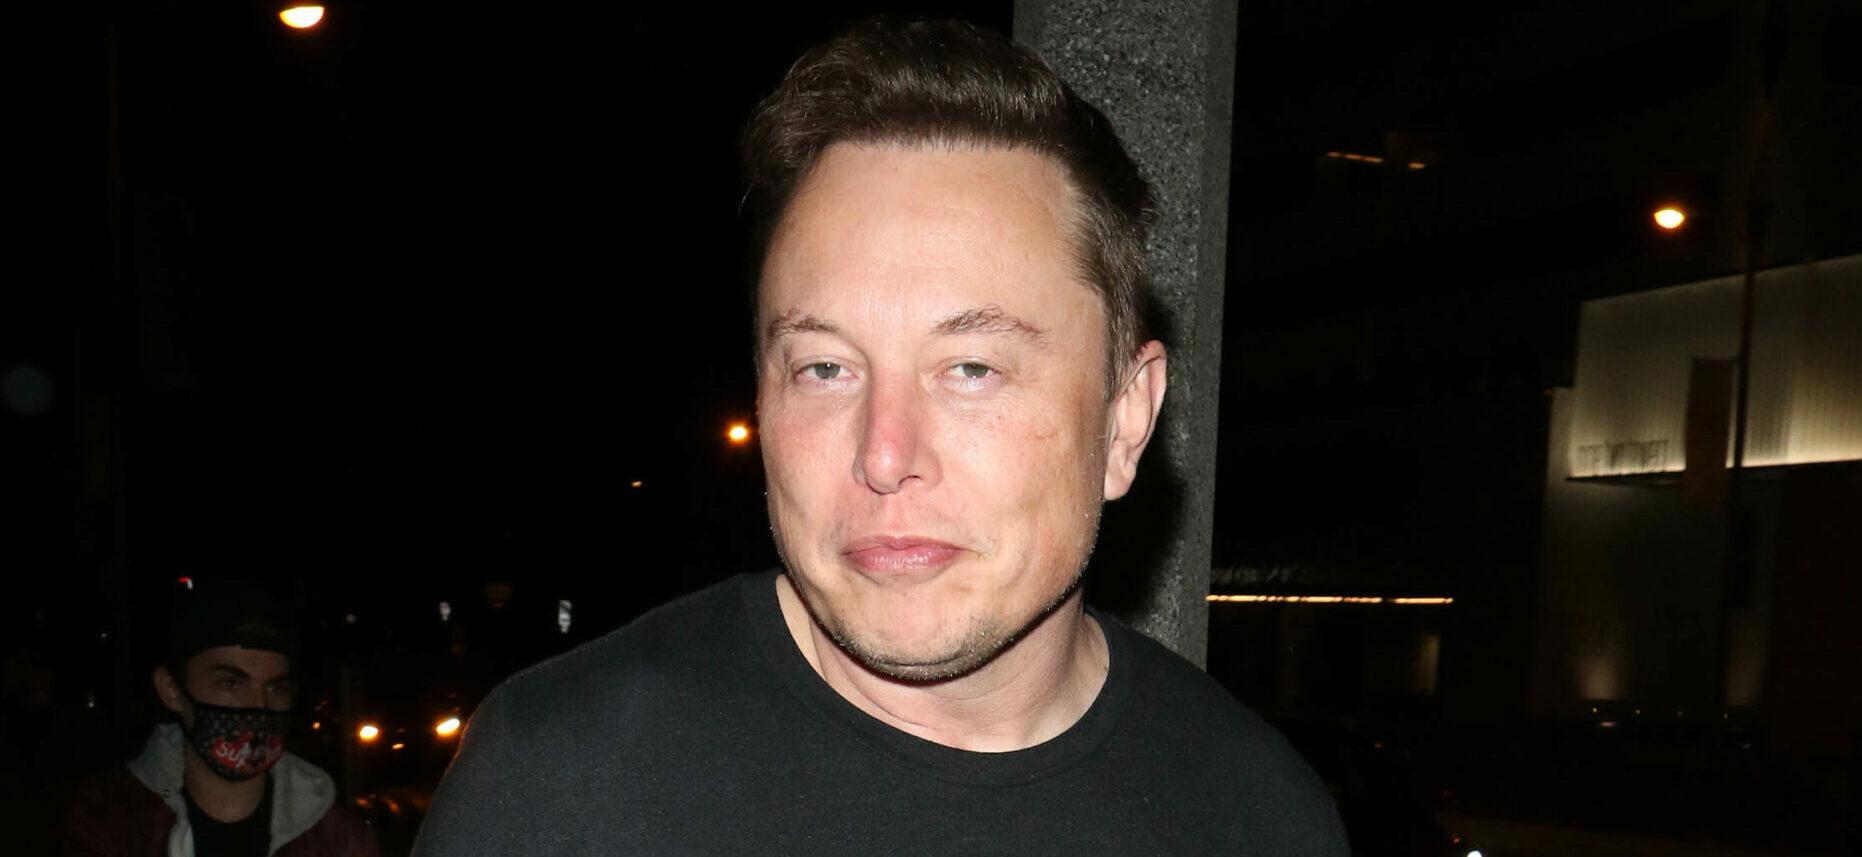 Joe Rogan Calls Elon Musk A ‘Superhero’ After Twitter Acquisition